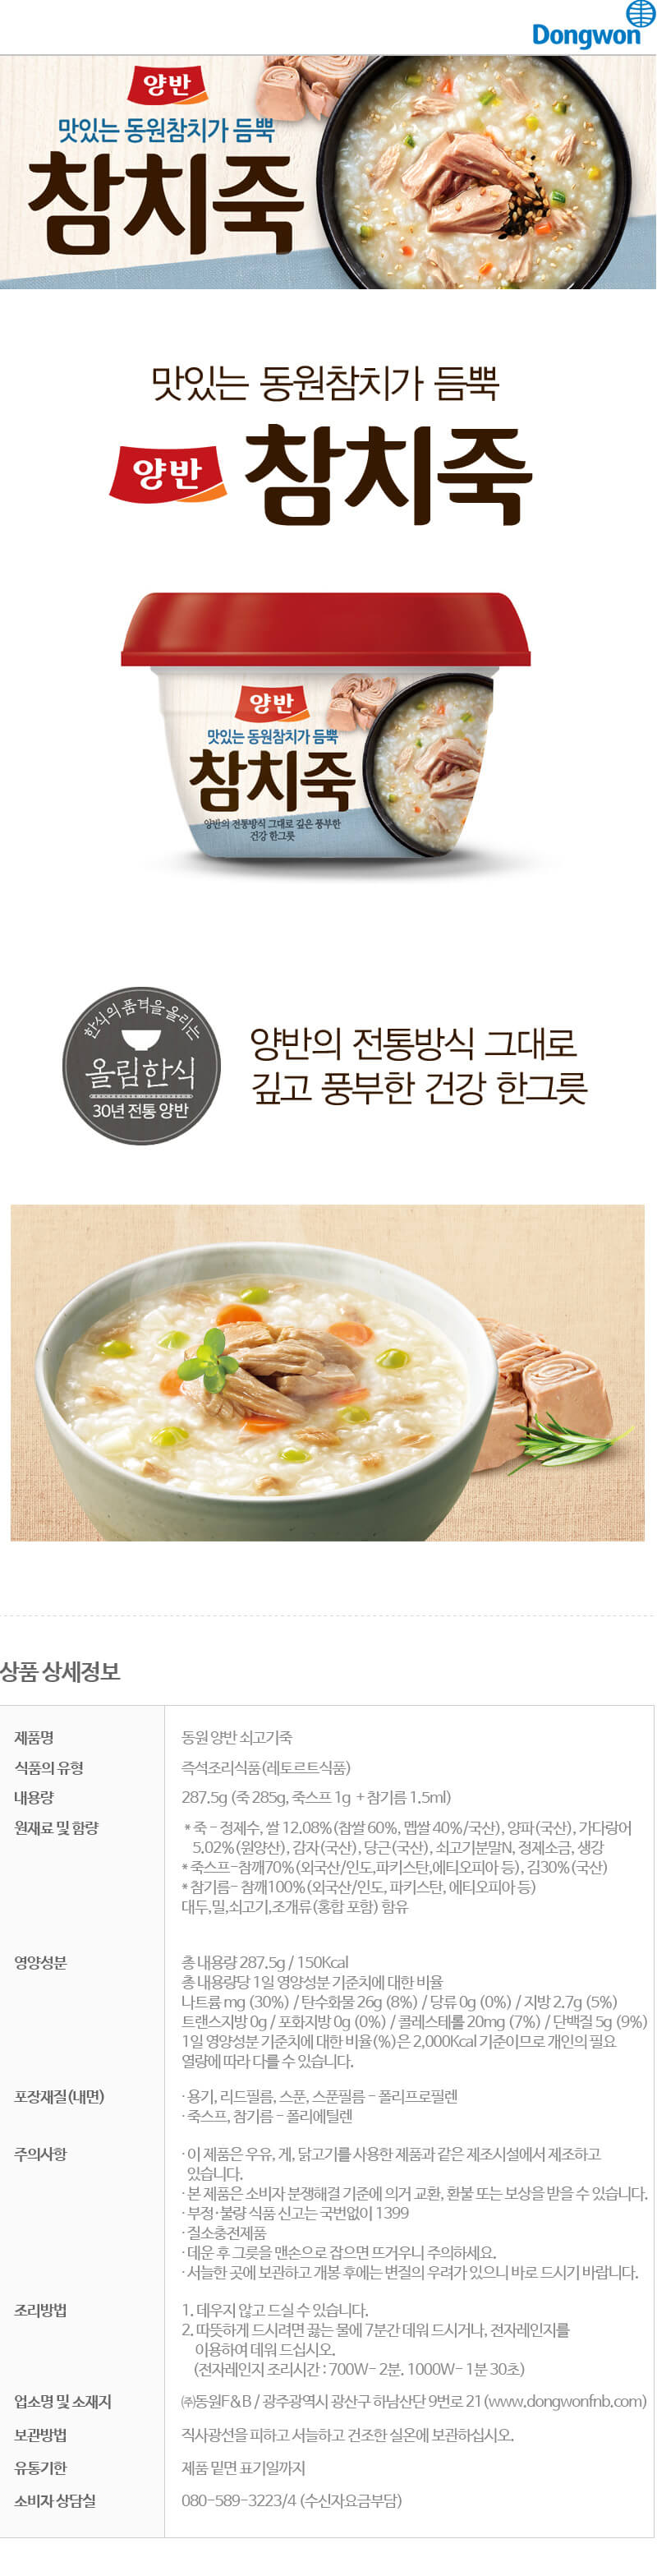 韓國食品-[동원] 양반 참치죽 287.5g